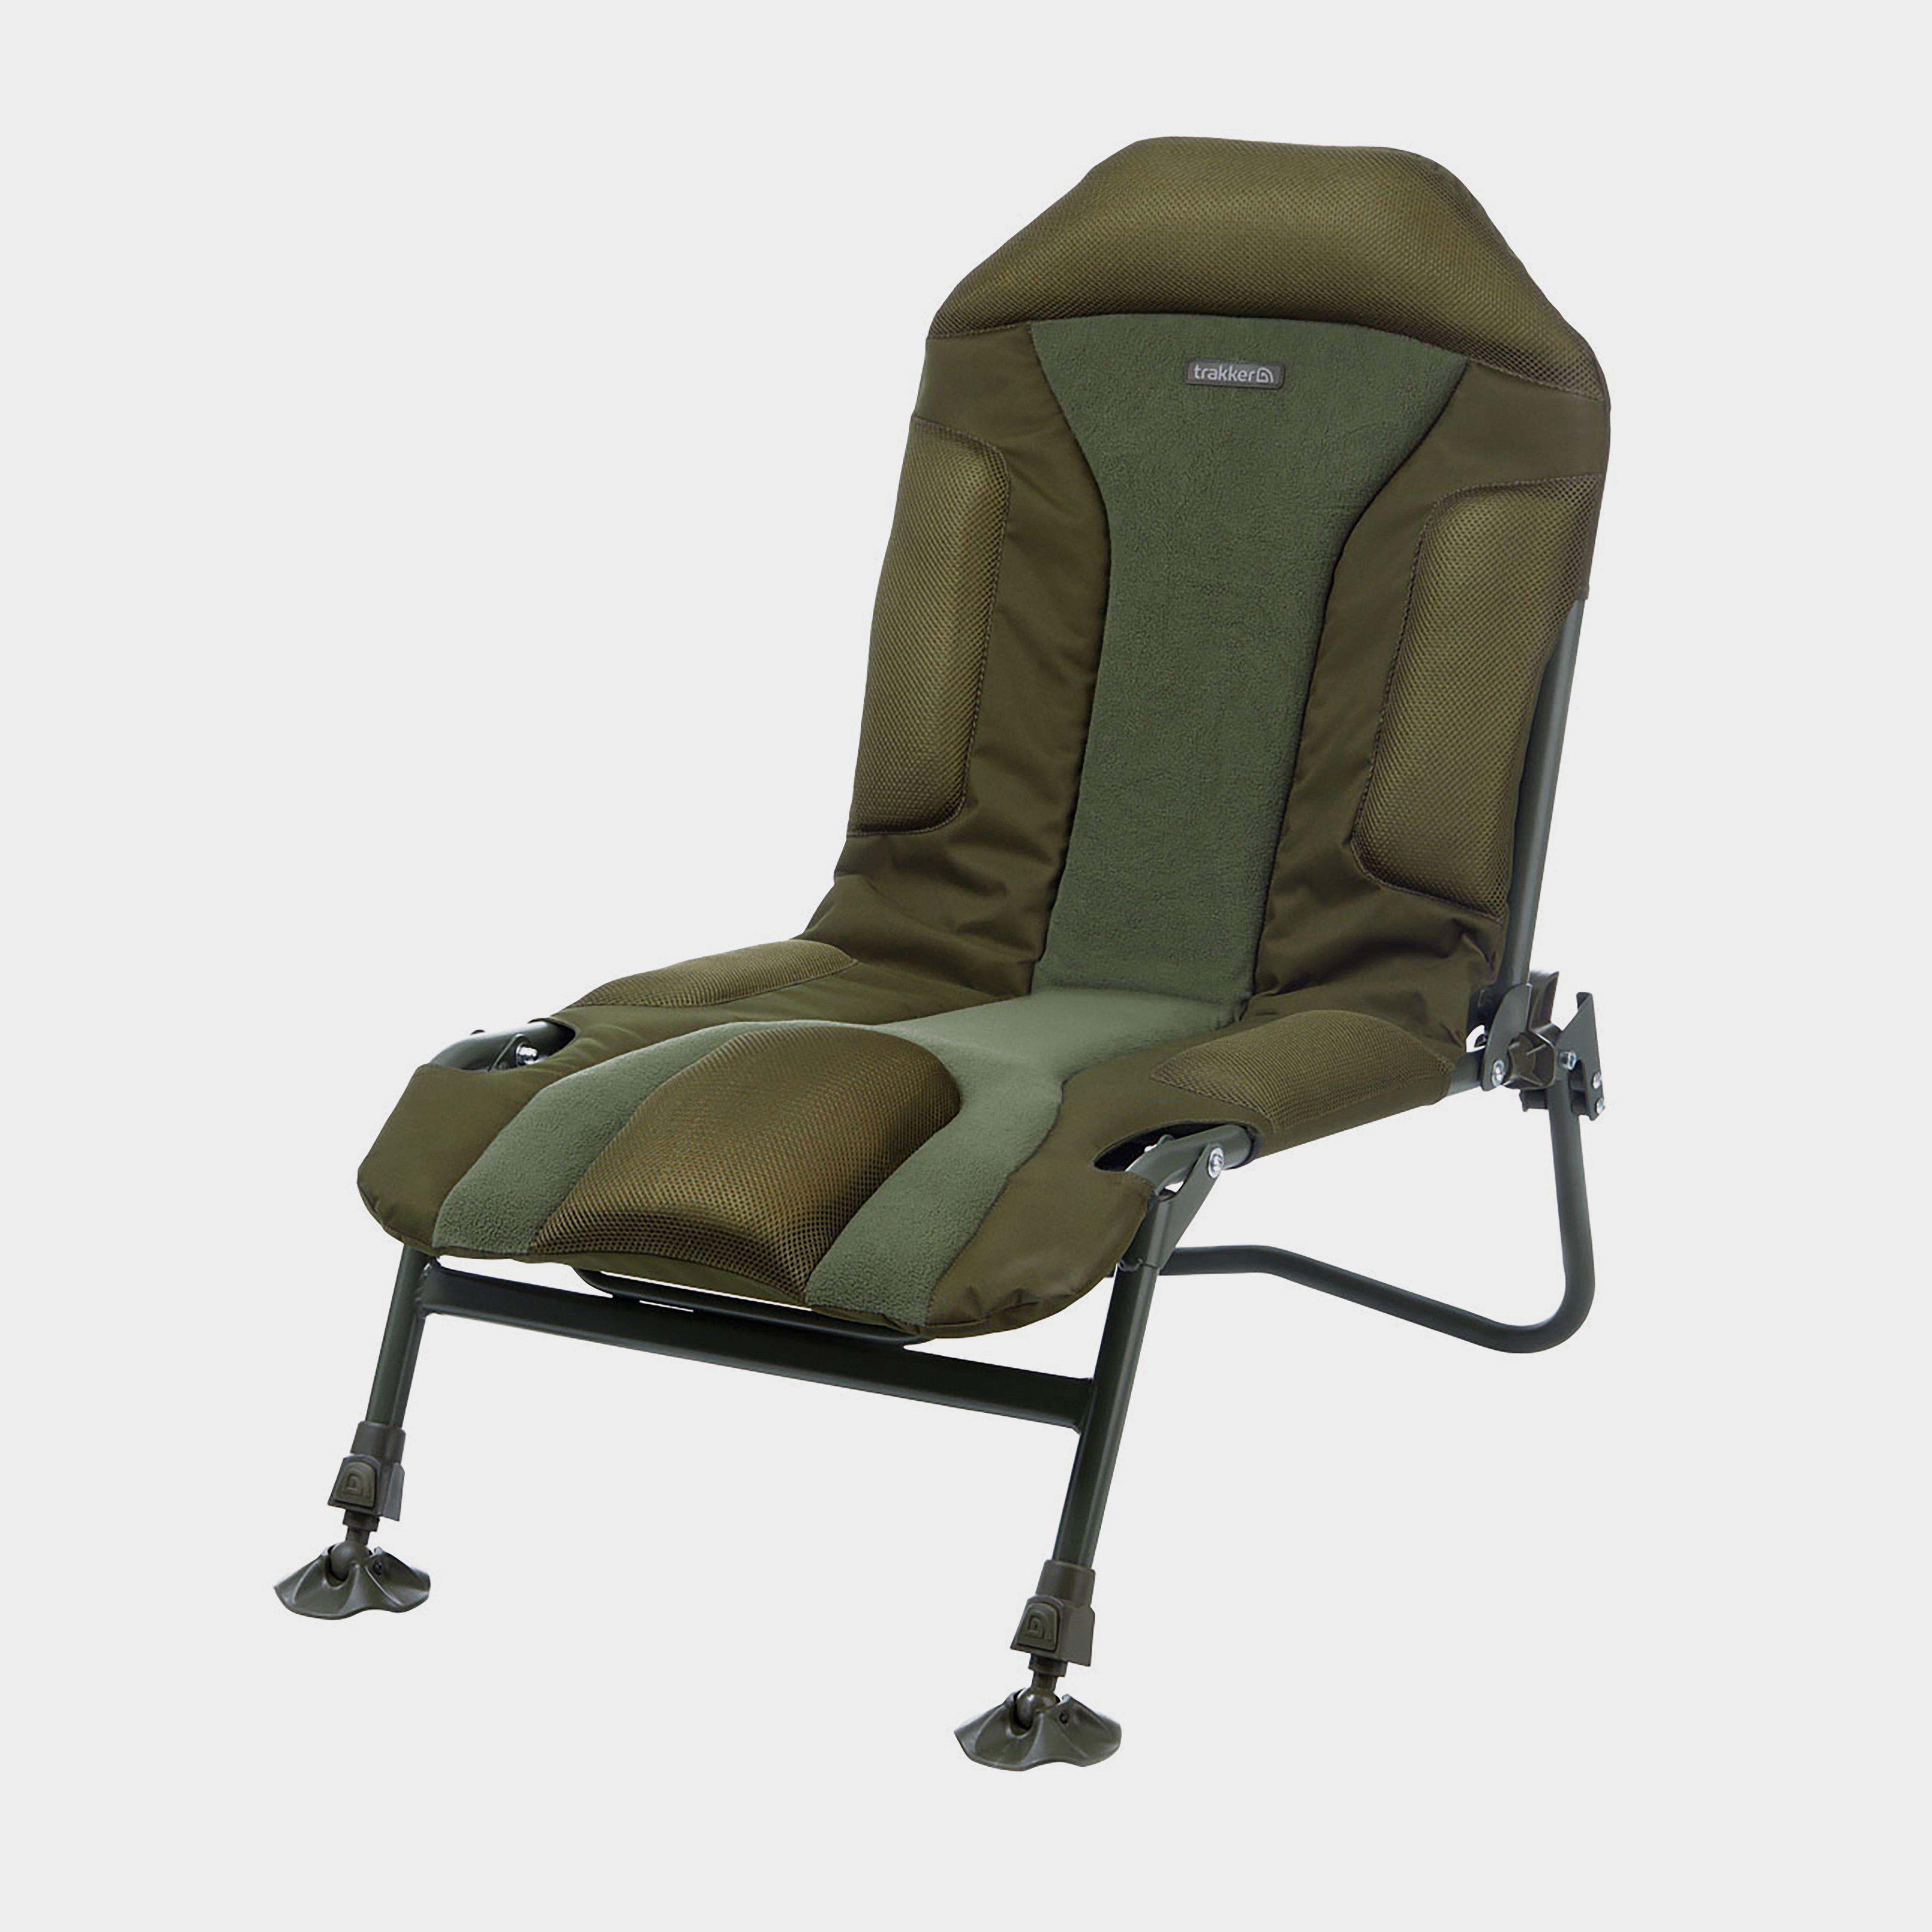  Trakker Levelite Transformer Chair, Green